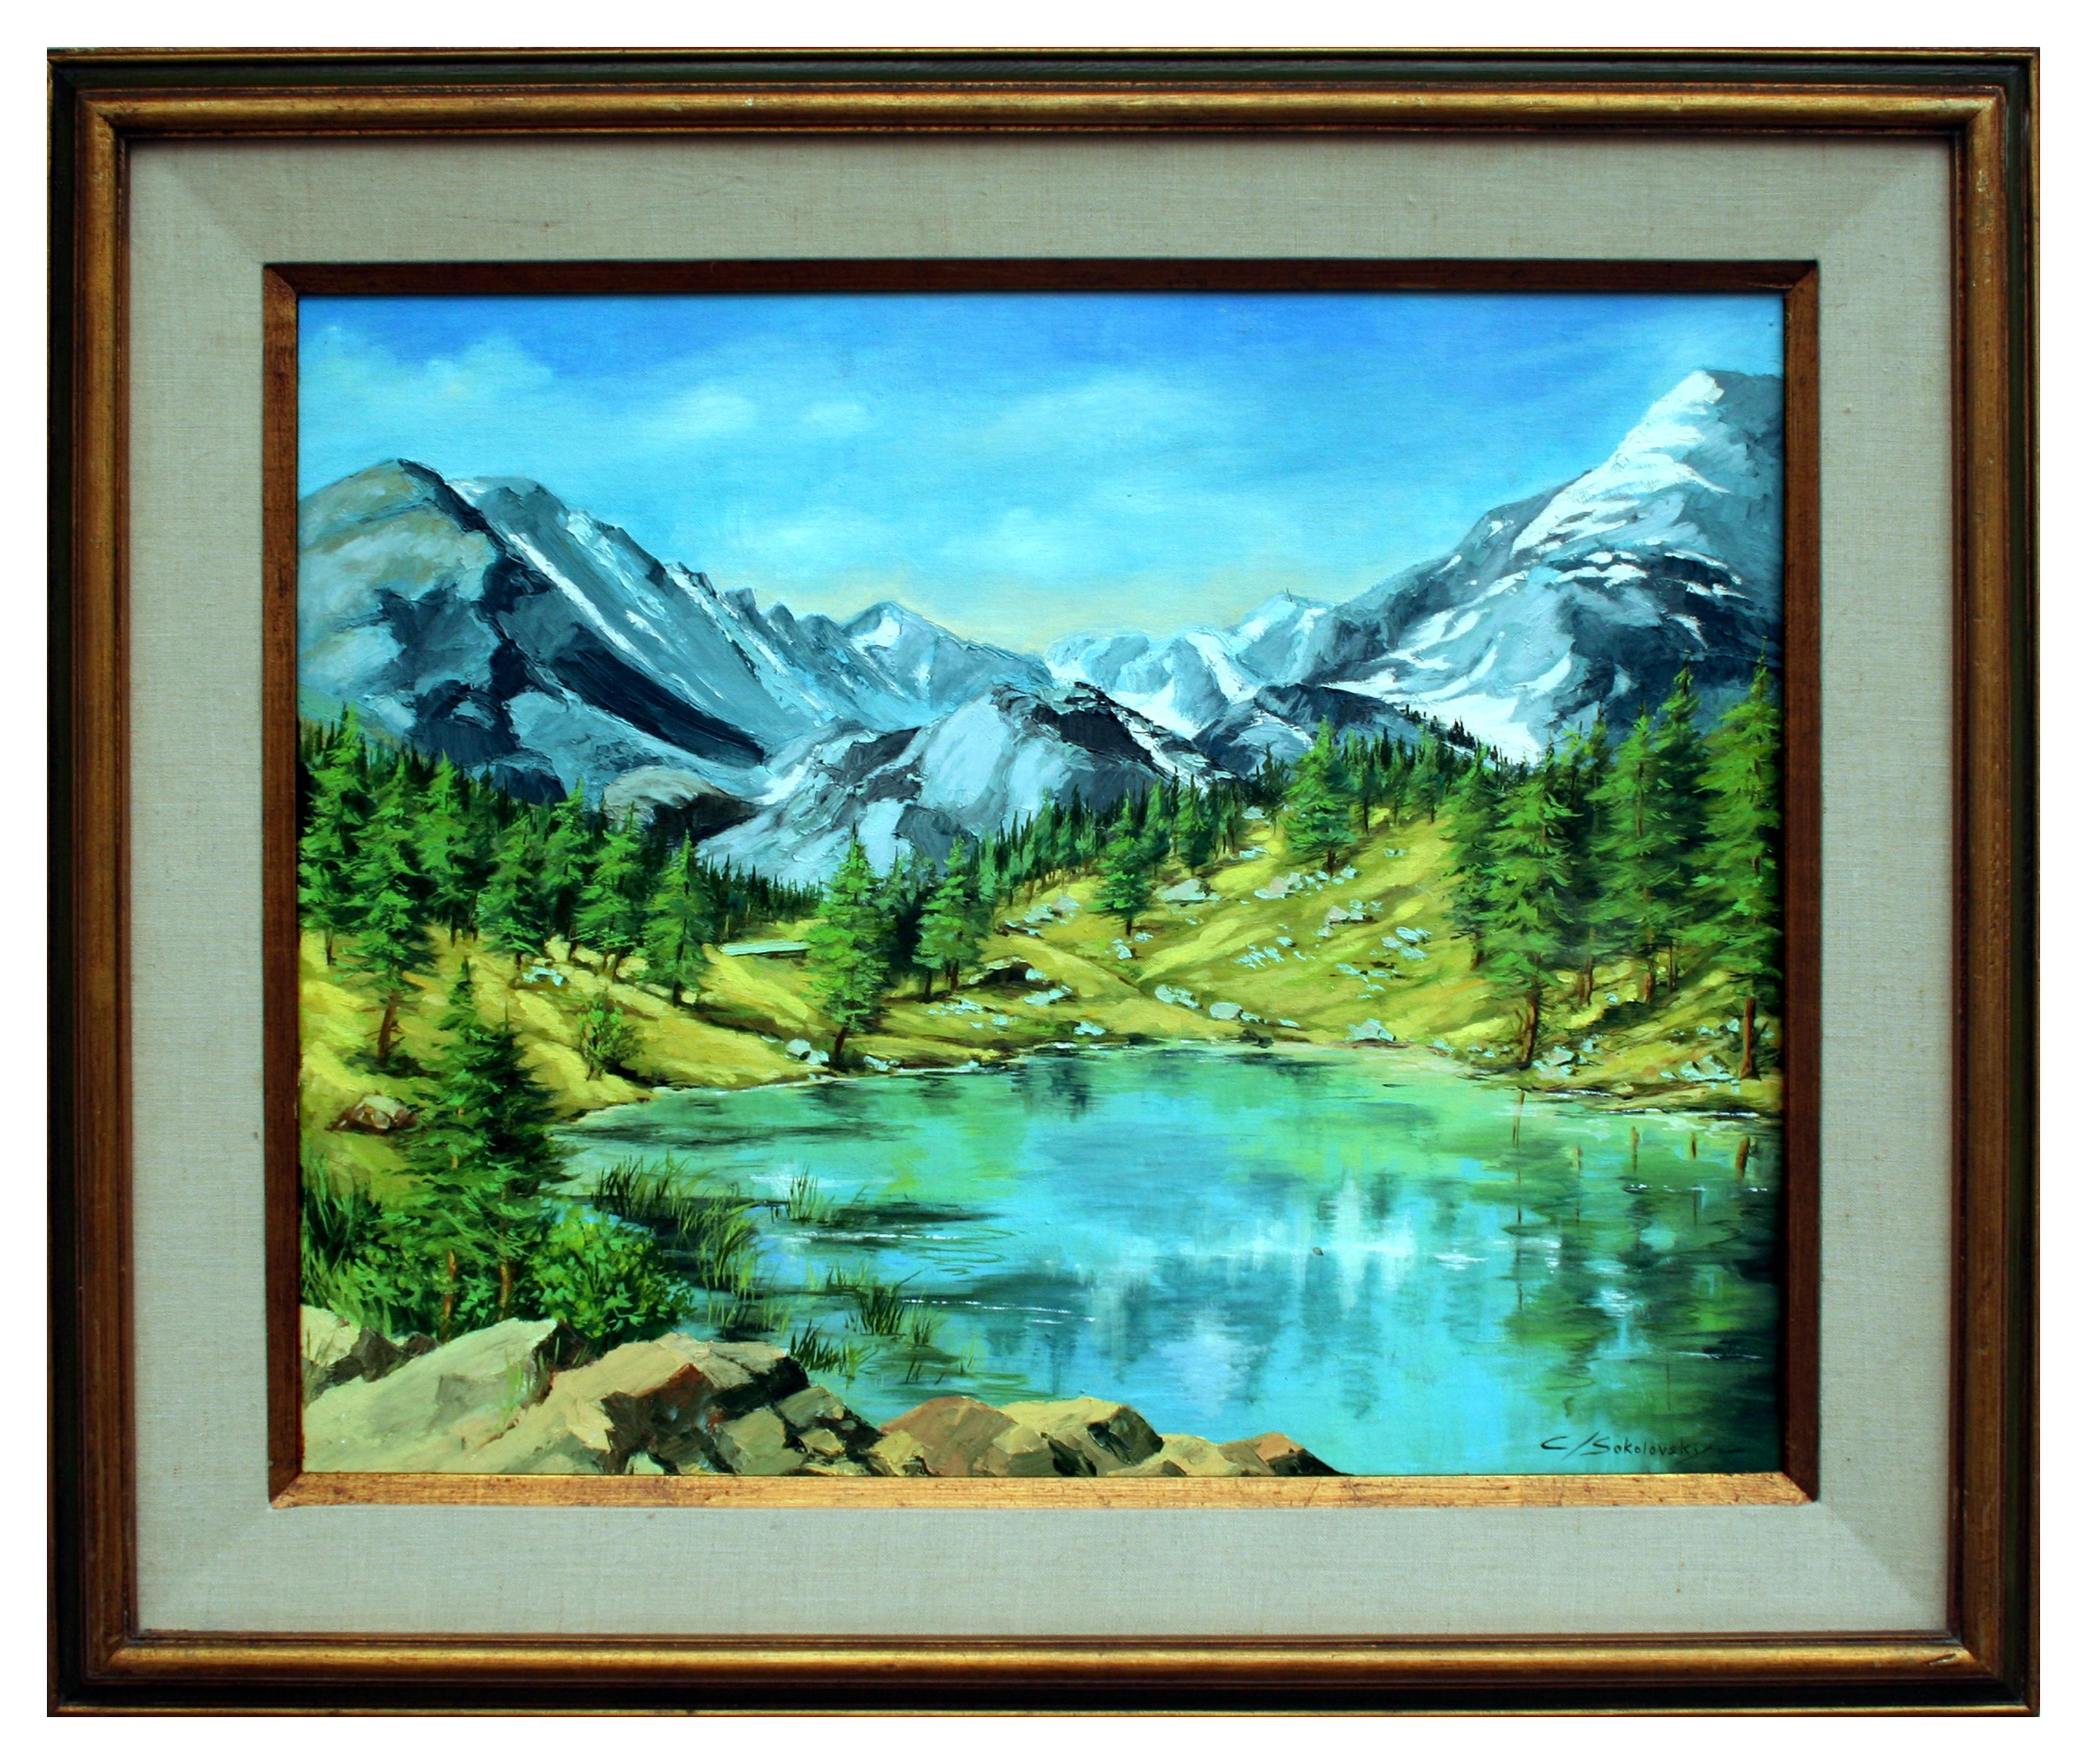 Landscape Painting C. Sokolovsky - Paysage de lac serein de la Sierra Mountain